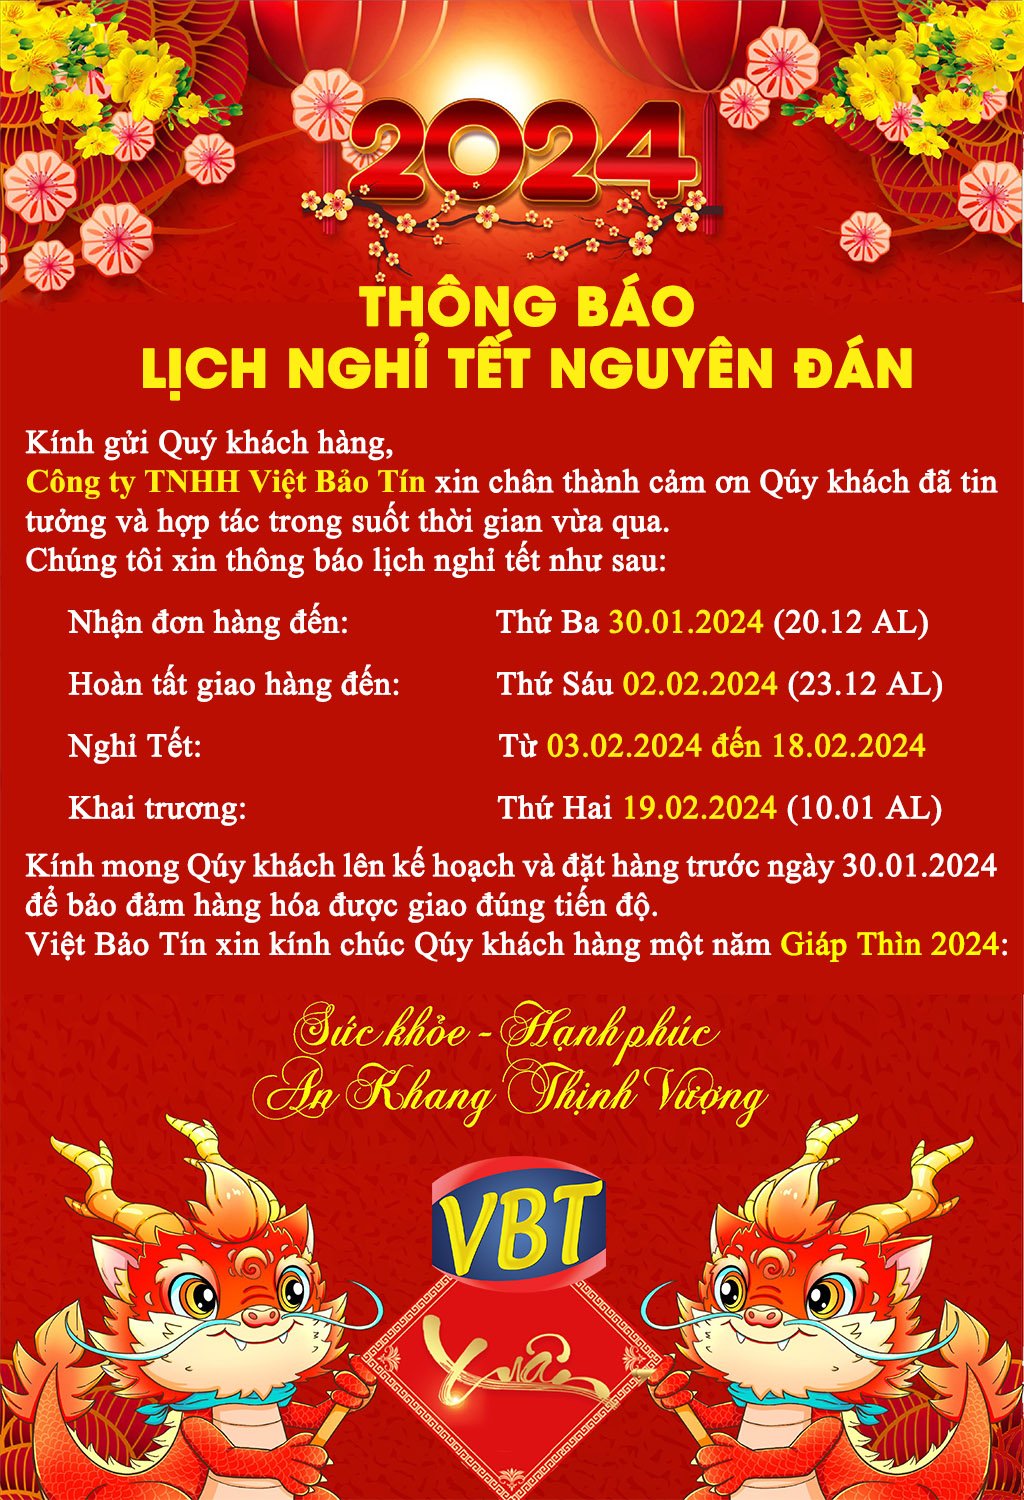 Lịch thông báo nghỉ tết của hóa chất Việt Bảo Tín